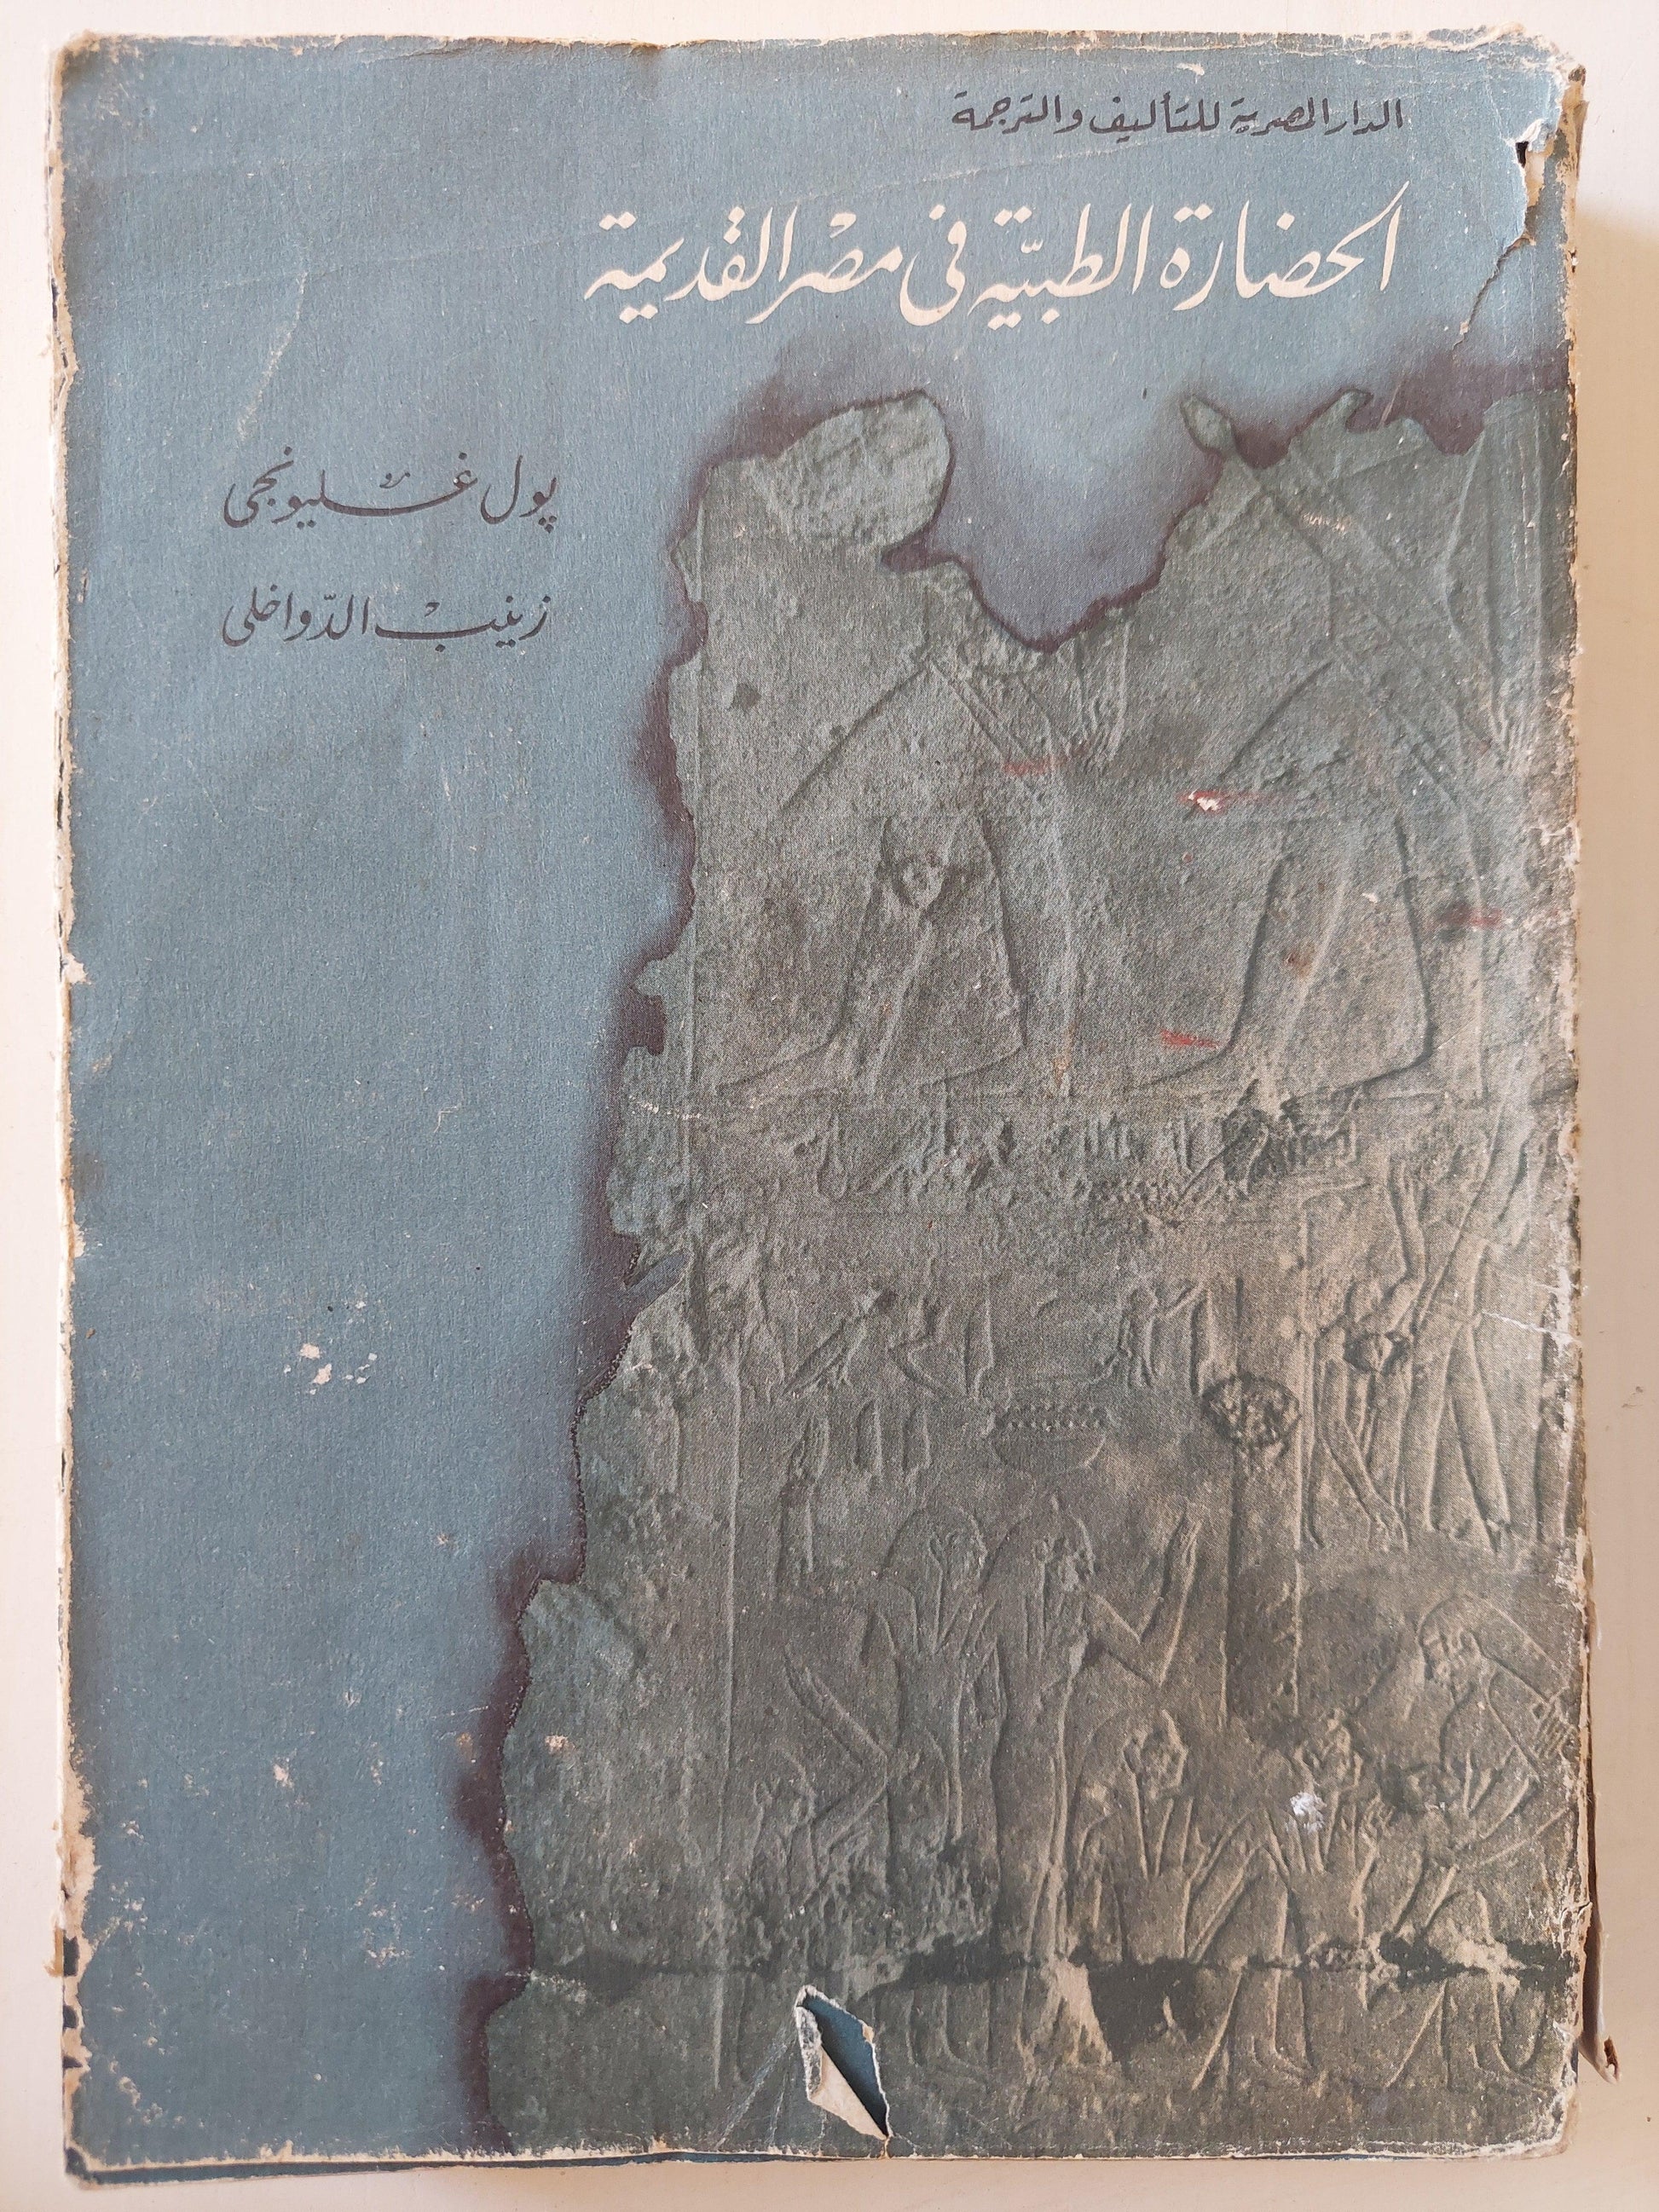 الحضارة الطبية في مصر القديمة ( مع ملحق خاص بالصور ) - متجر كتب مصر